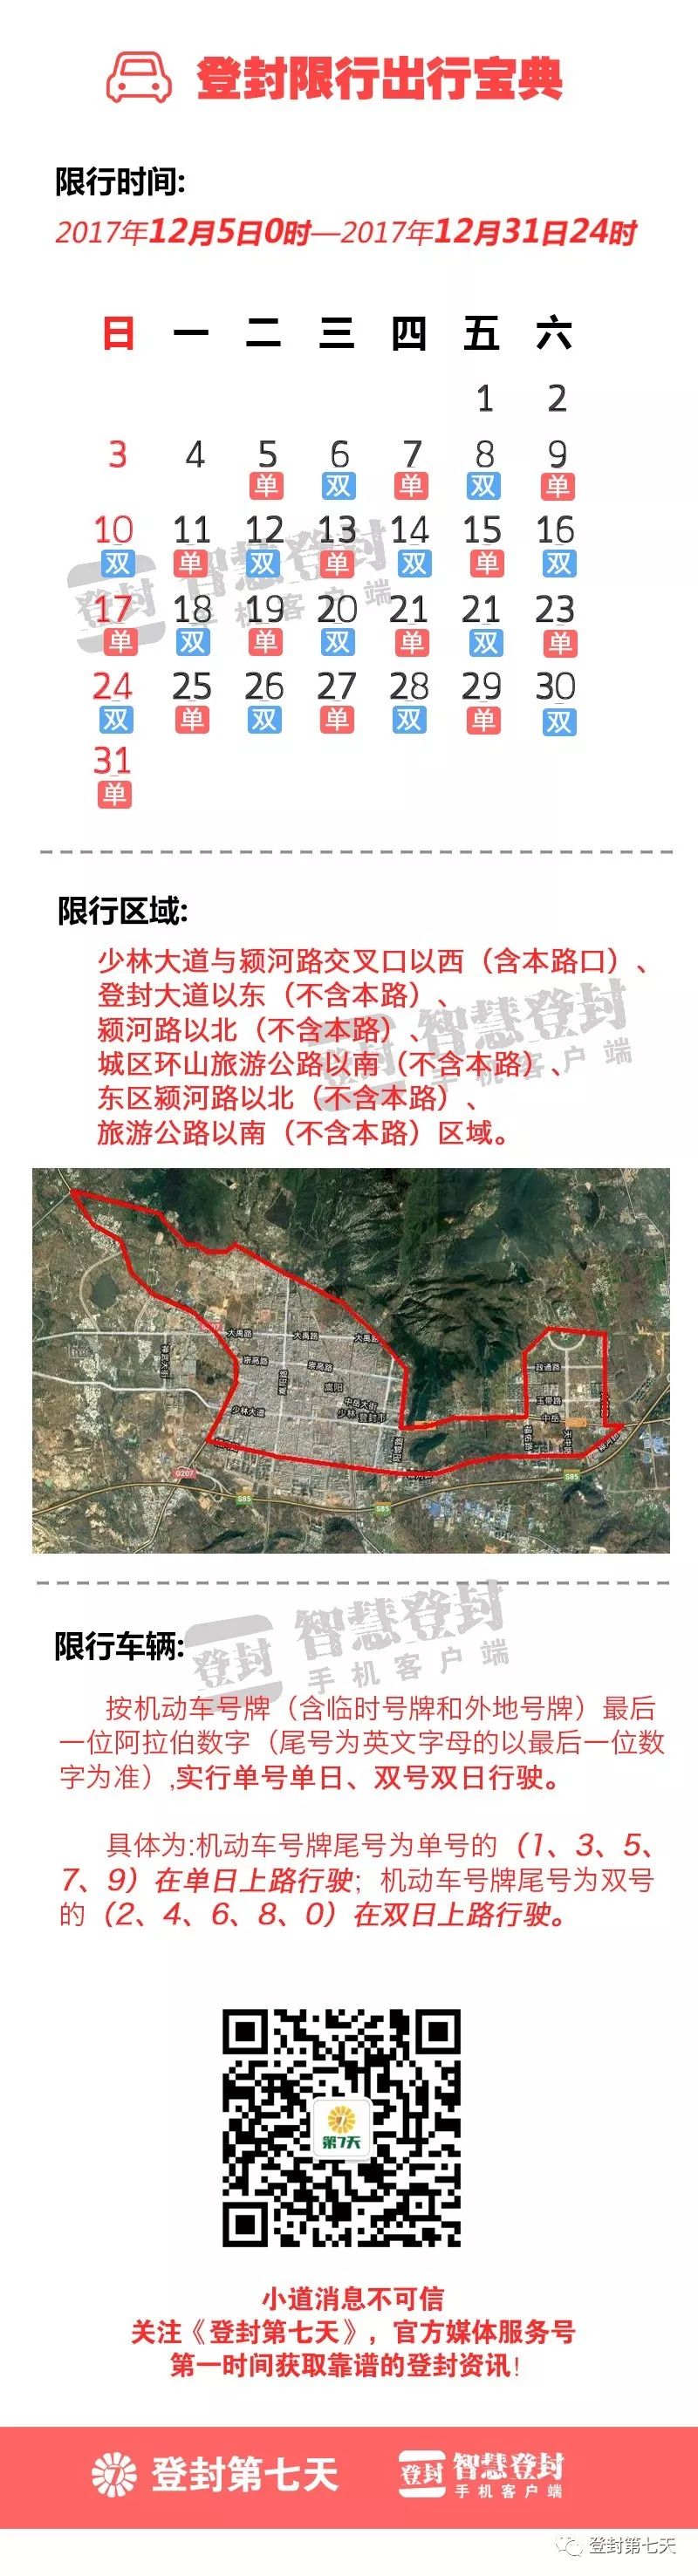 除了登封限行外,据统计,目前河南省也已经有18个省辖市实行机动车